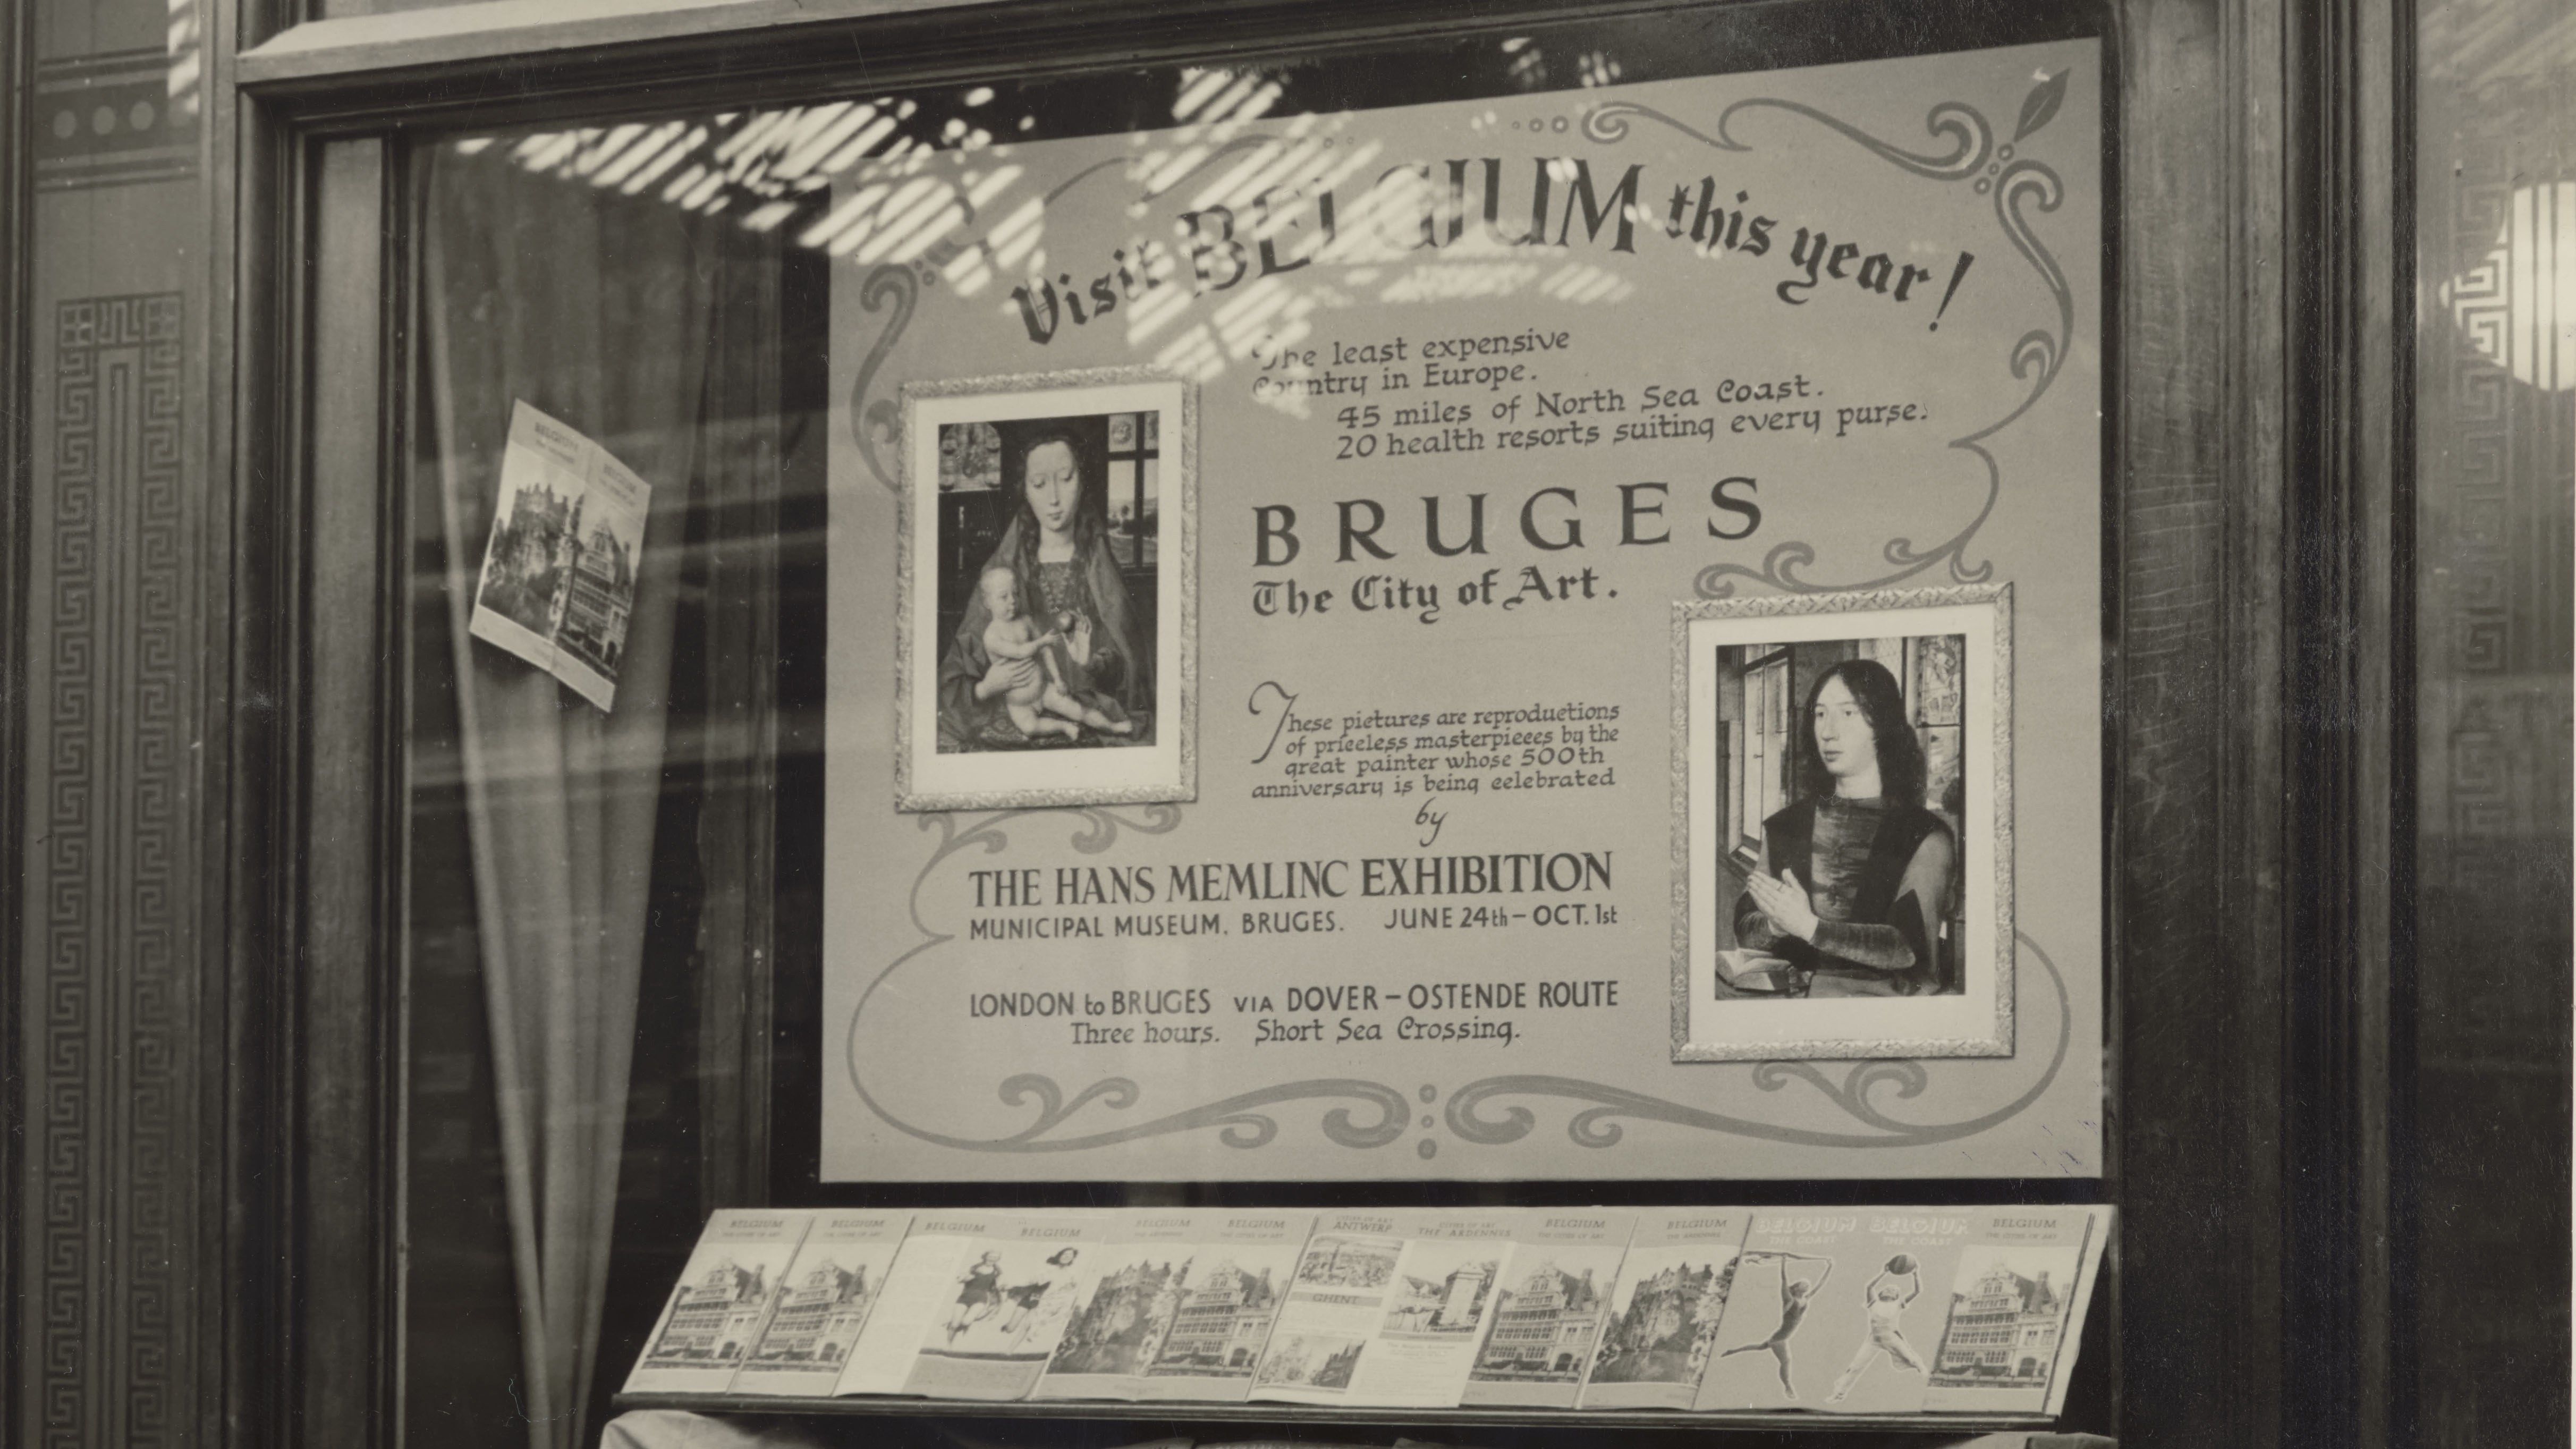 Zwart-witfoto van een vitrine in Victoria Station, Londen uit 1939. Op de foto is een vitrine te zien waarin de Memlingtentoonstelling n.a.v. de 500ste geboortedag van Hans Memling in het Stedelijk Museum - het latere Groeningemuseum - wordt aangekondigd.